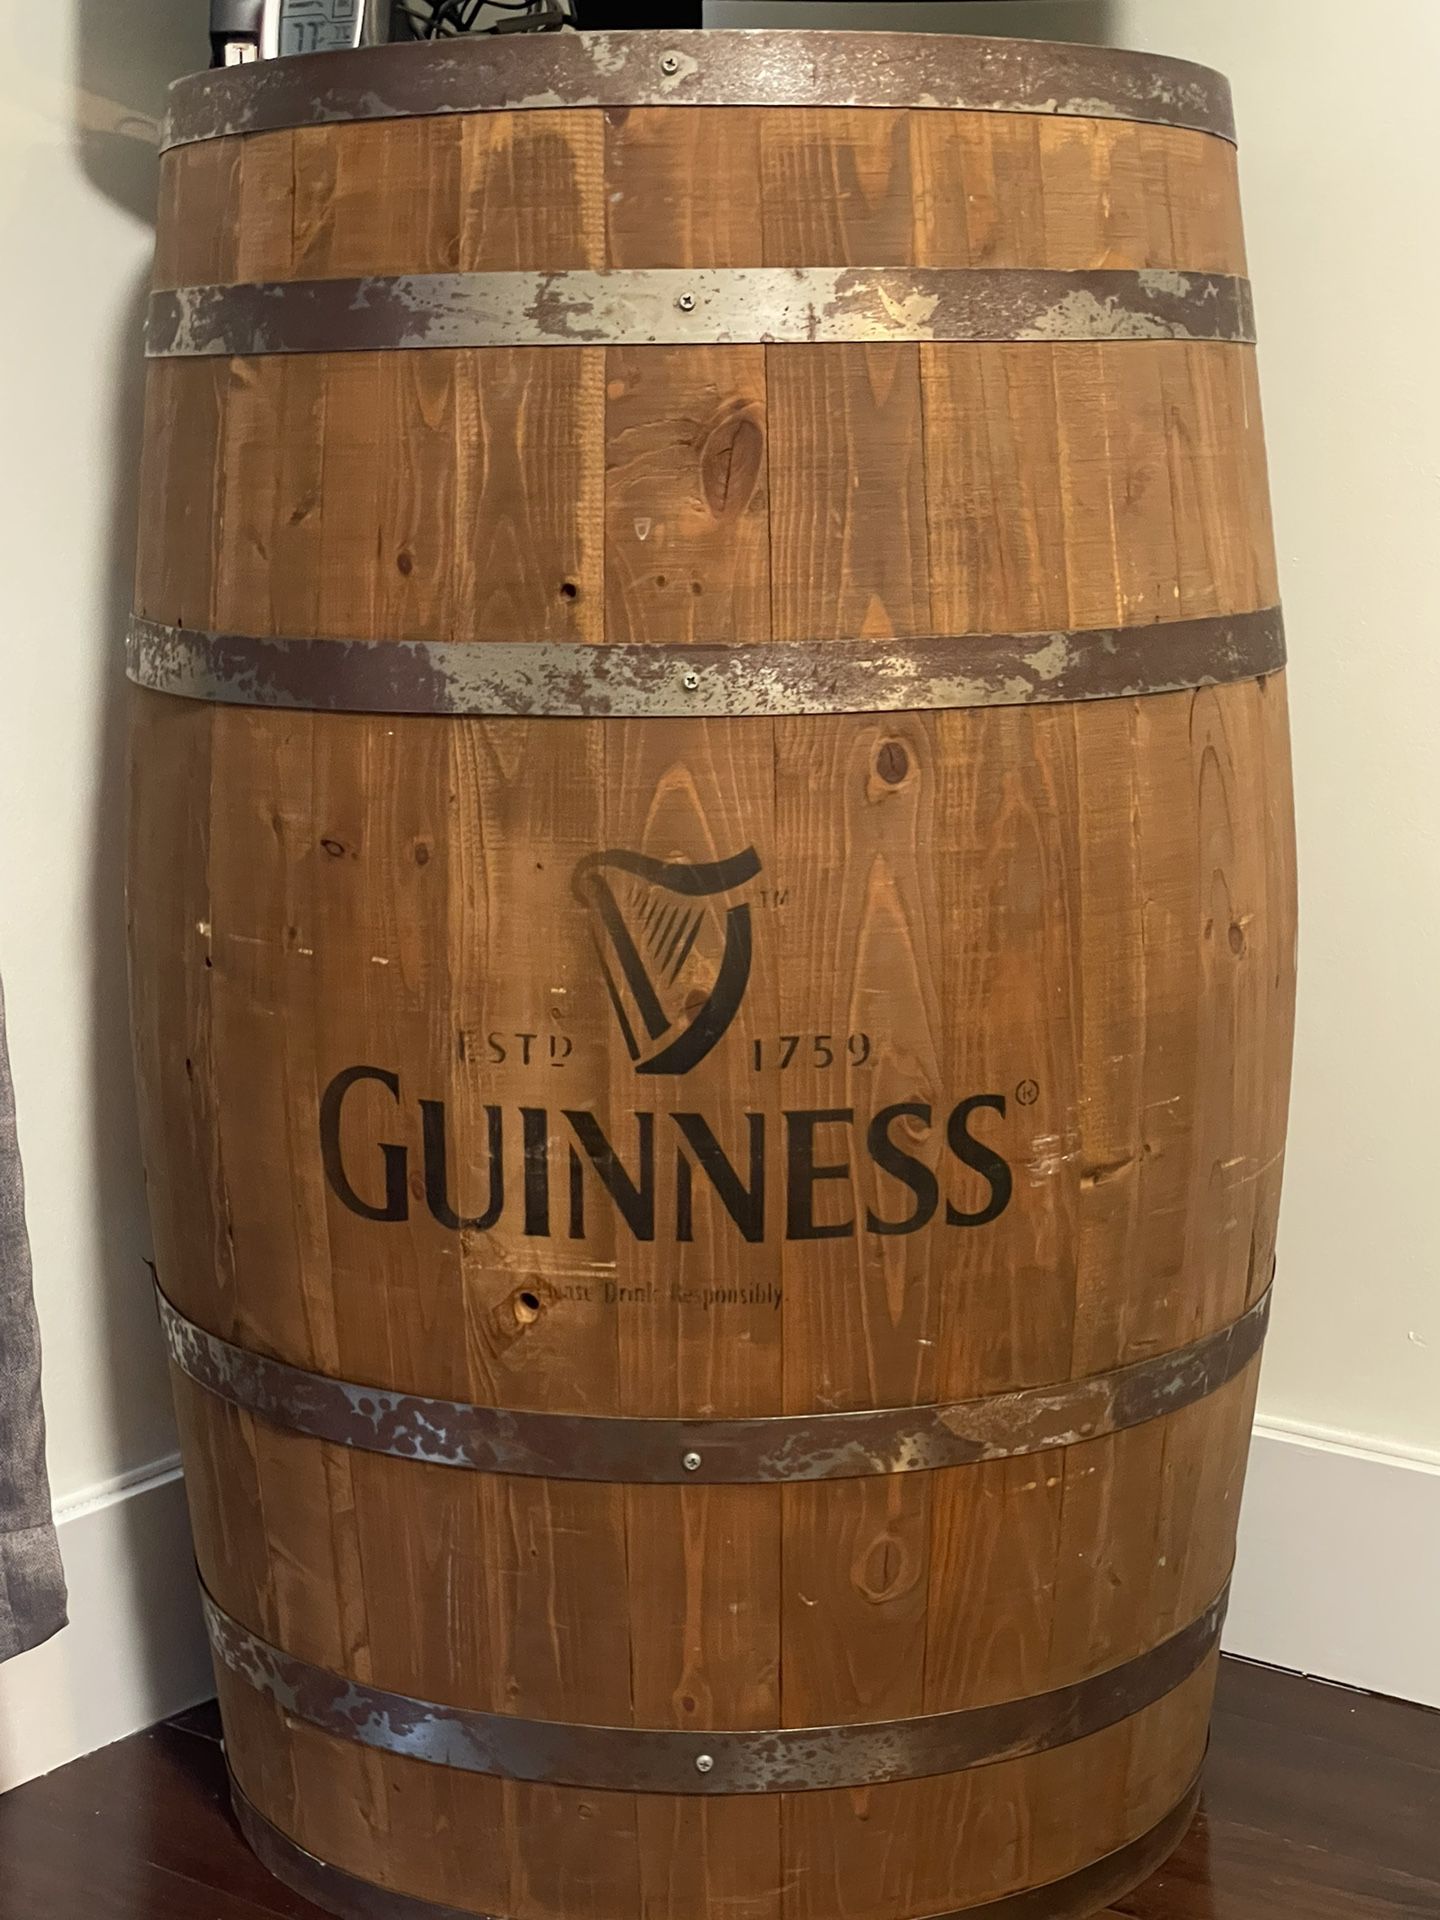 Guinness Oak barrel